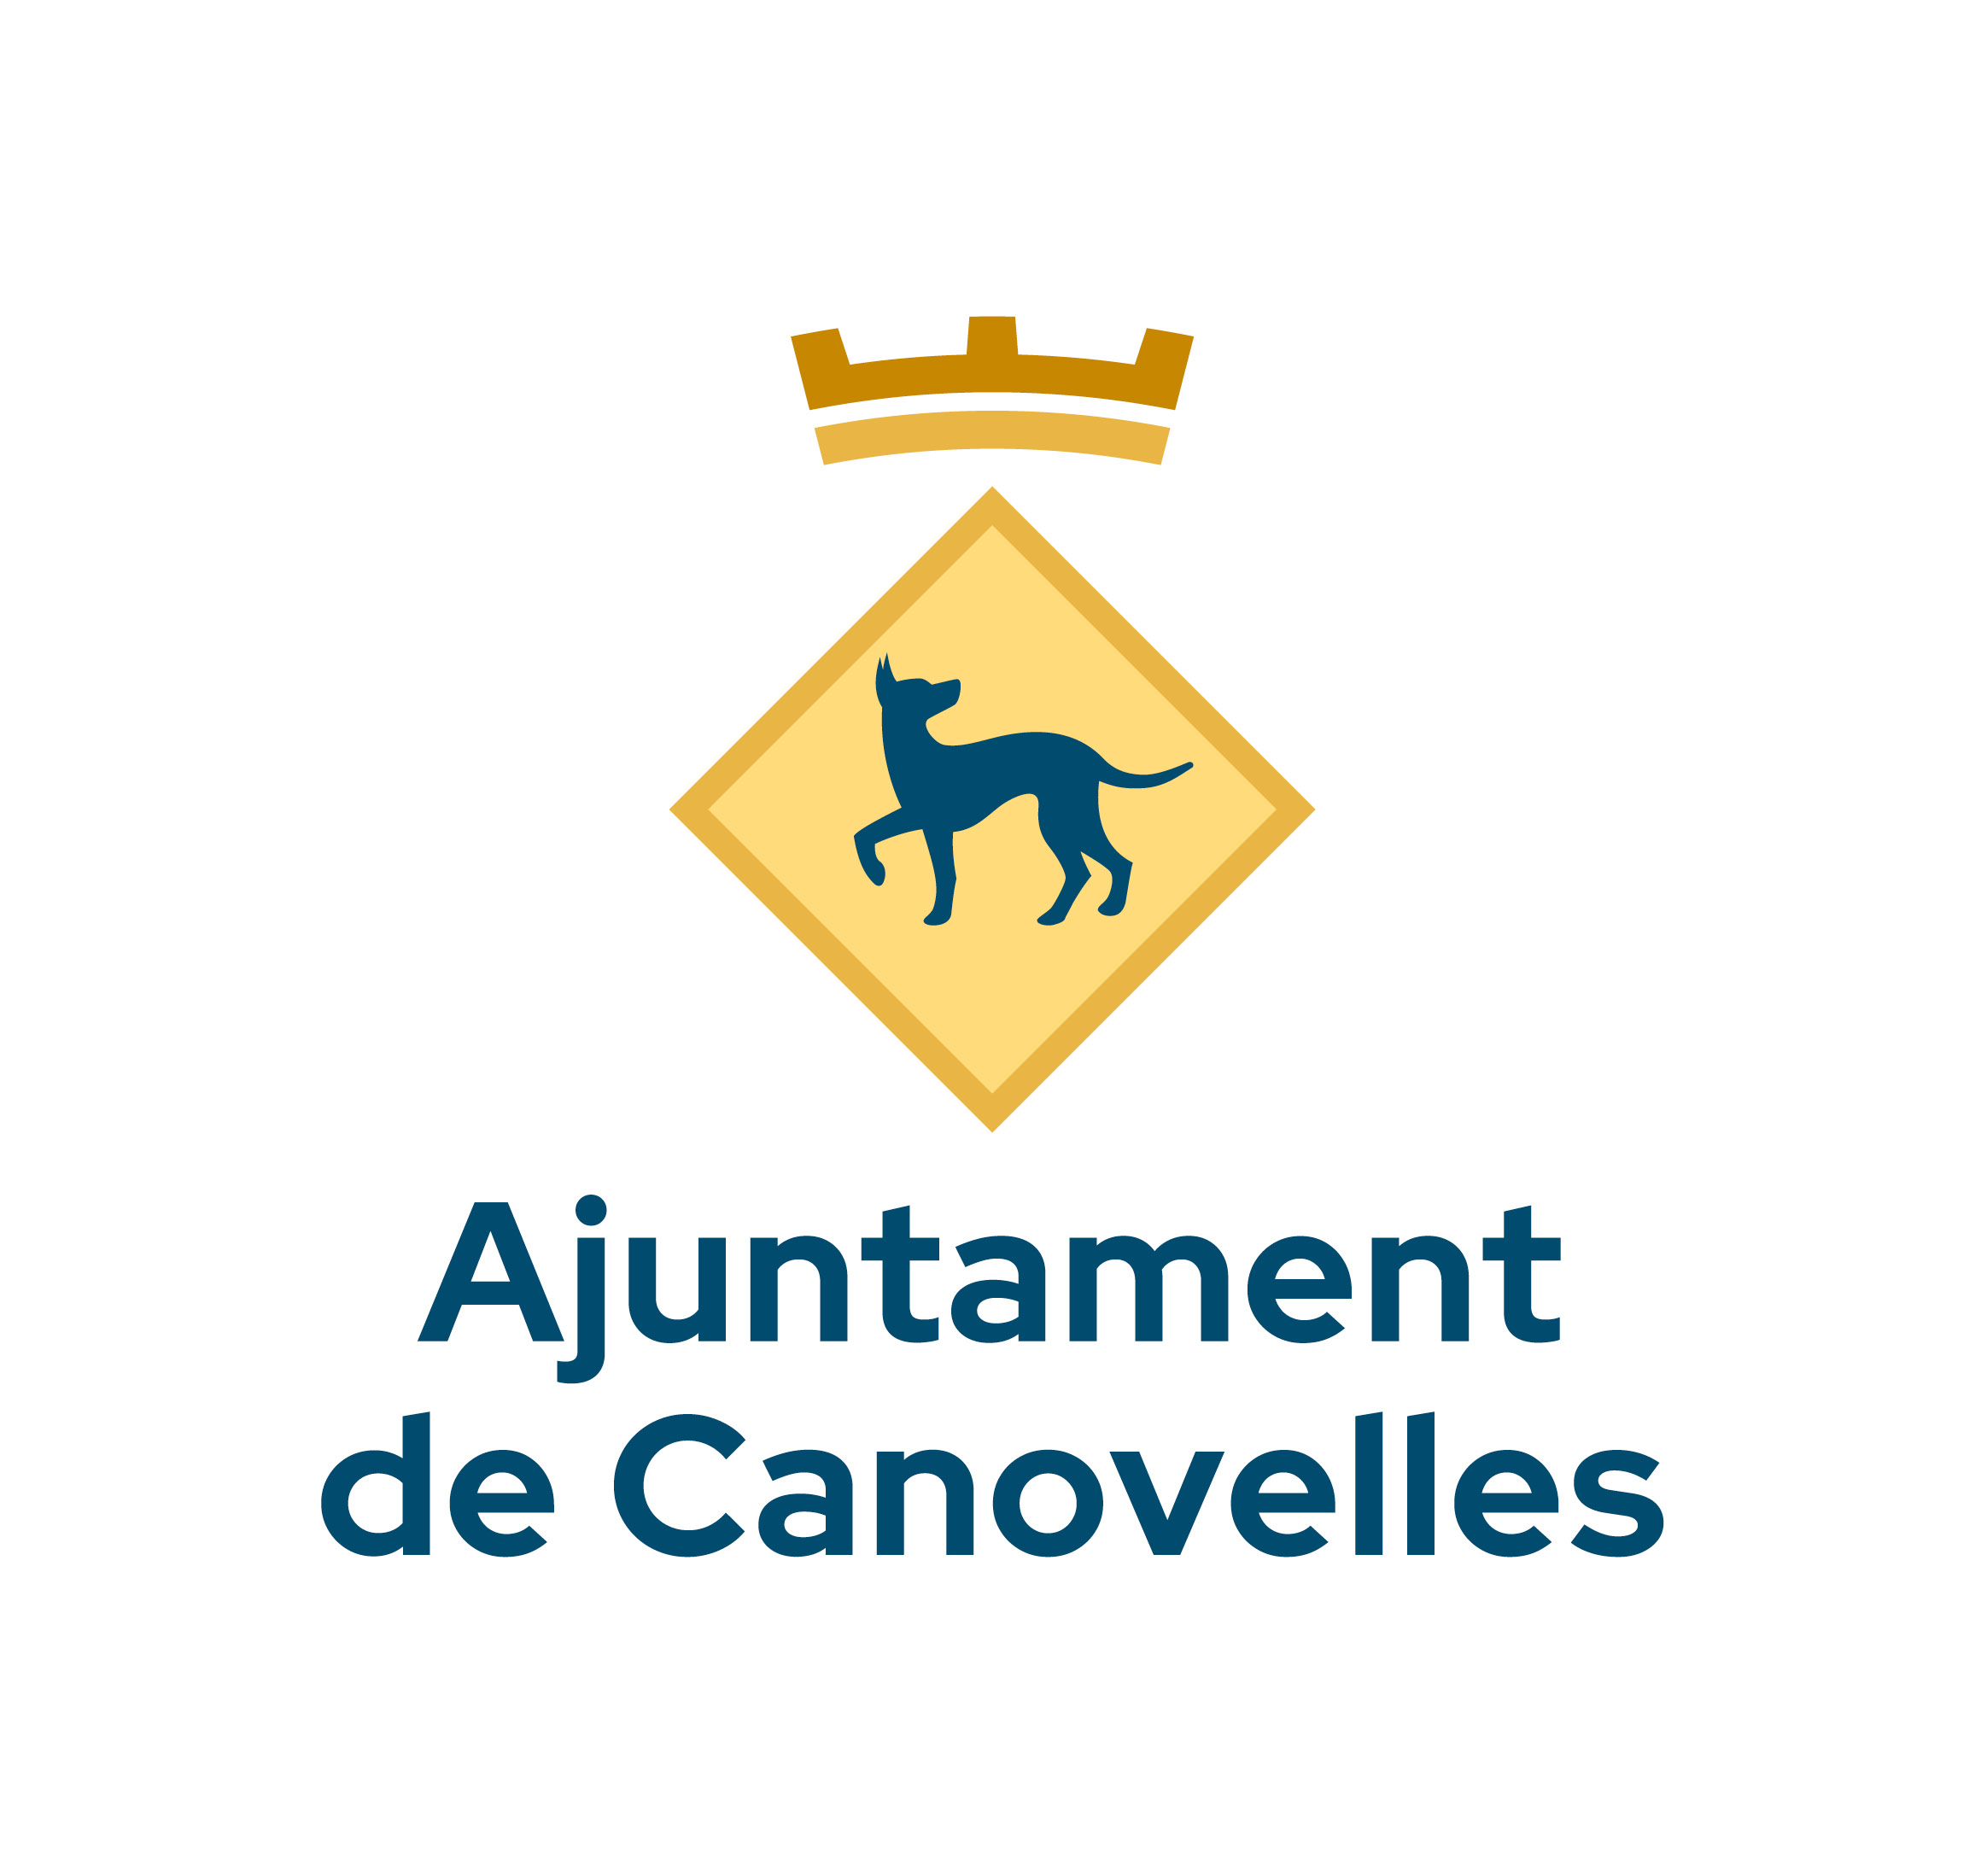 Ajuntament de Canovelles - Participa311